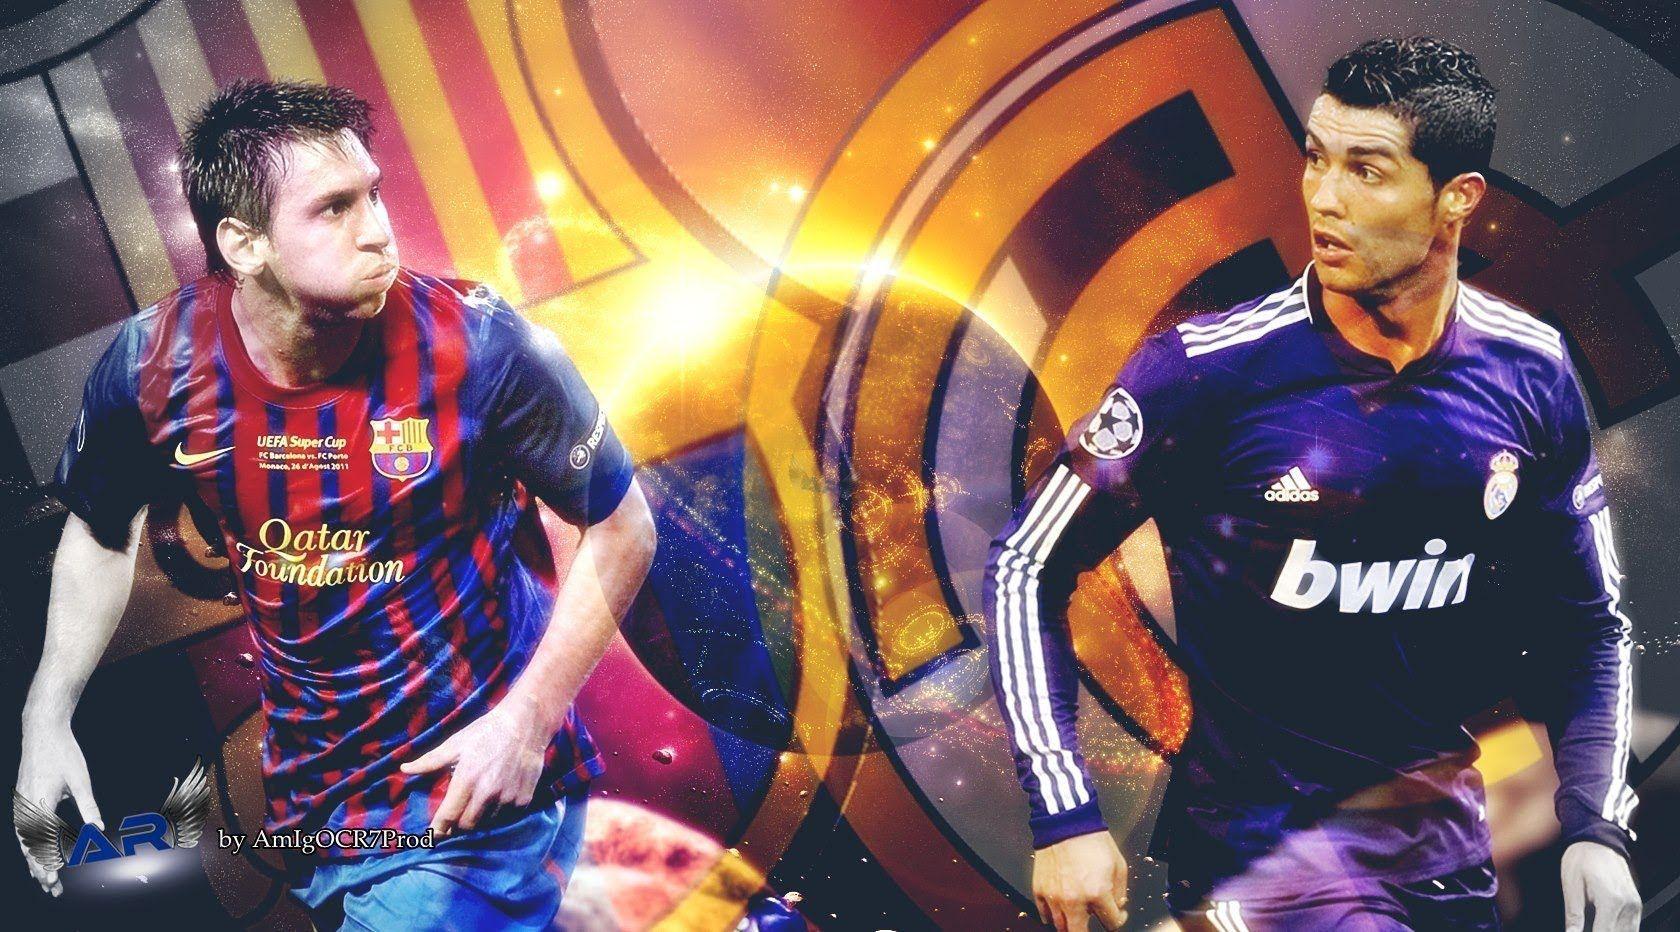 Cristiano Ronaldo Vs Lionel Messi 2016 Wallpapers - Wallpaper Cave